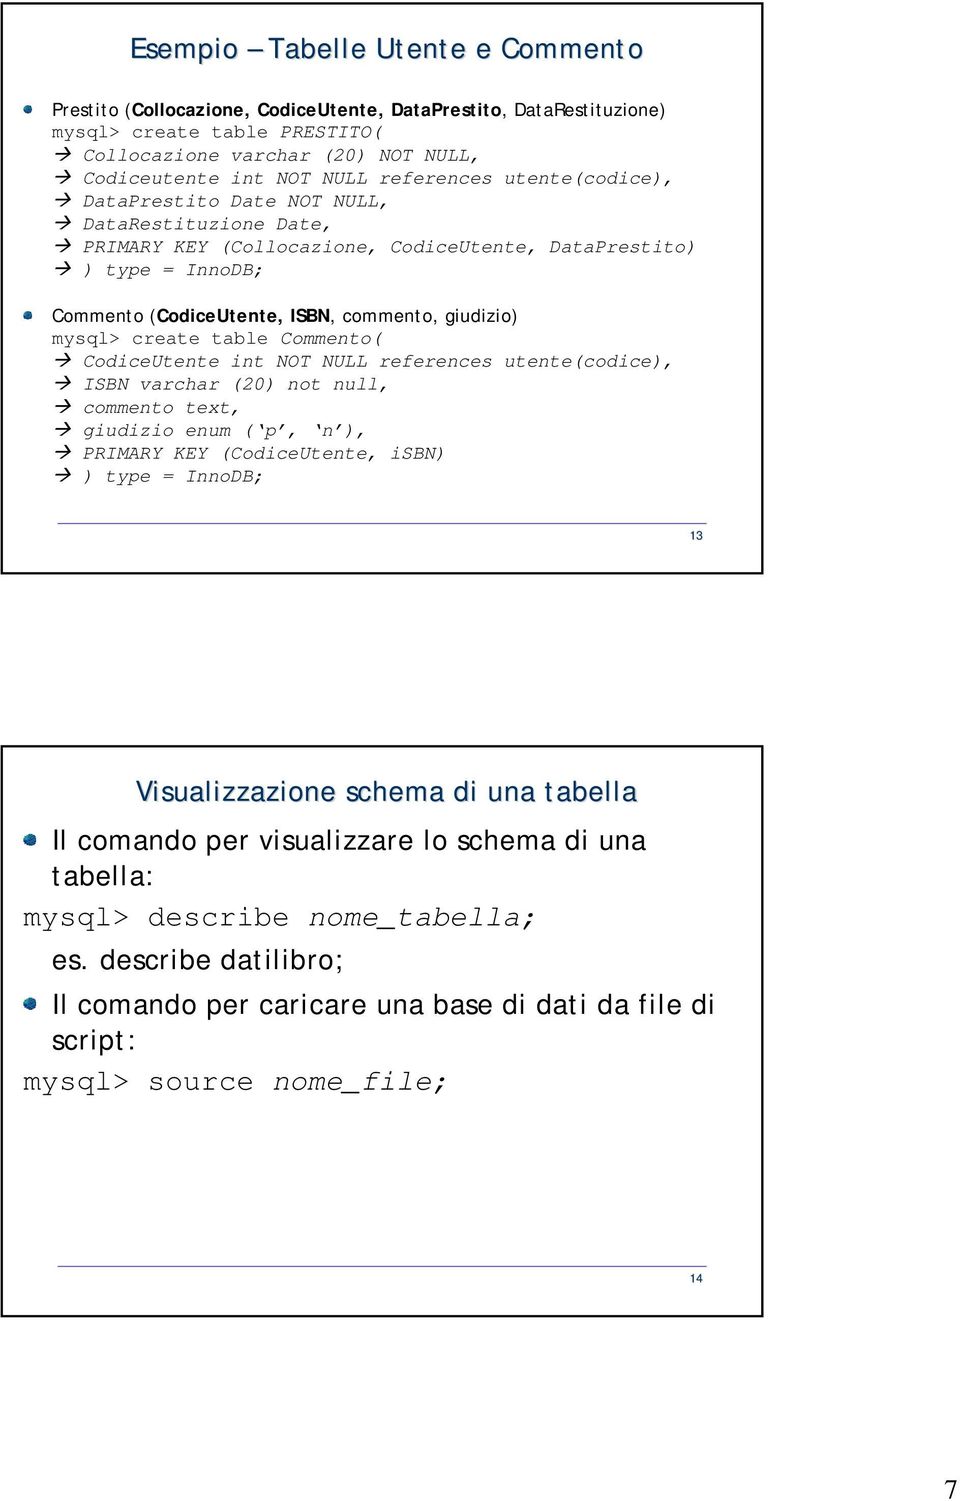 mysql> create table Commento( CodiceUtente int NOT NULL references utente(codice), ISBN varchar (20) not null, commento text, giudizio enum ( p, n ), PRIMARY KEY (CodiceUtente, isbn) ) type = InnoDB;